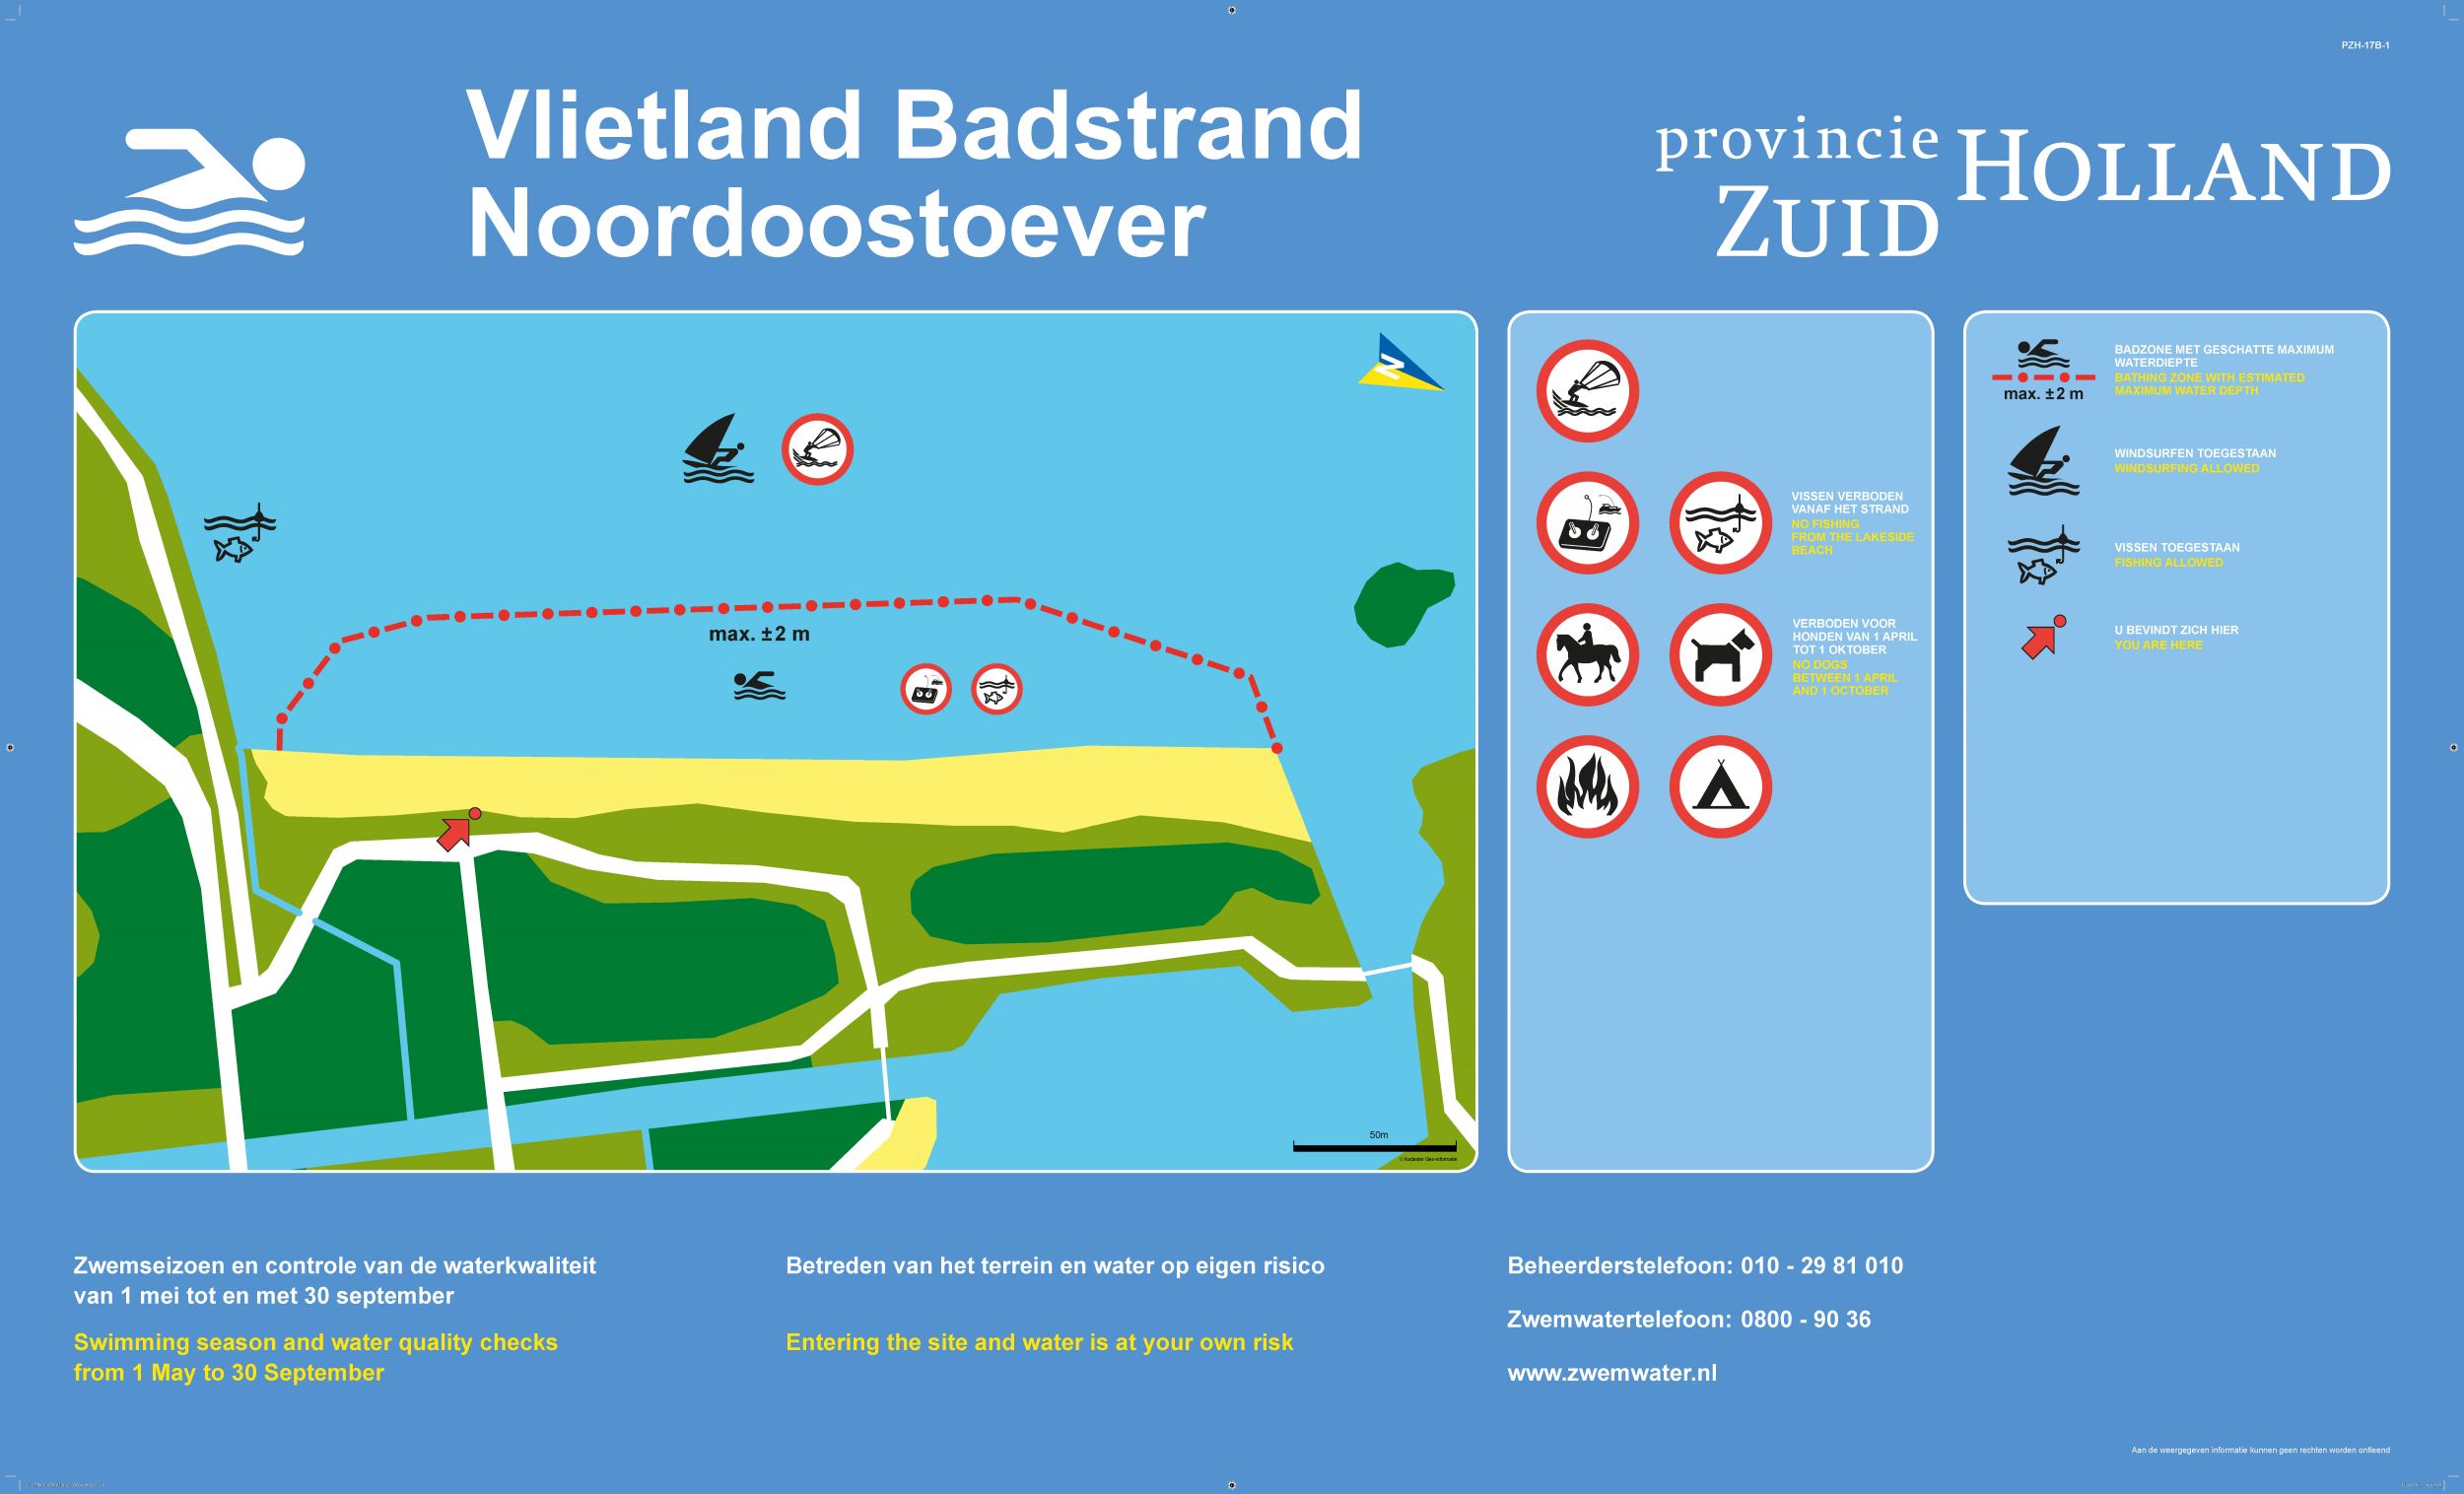 Het informatiebord bij zwemlocatie Vlietland Badstrand Noordoostoever